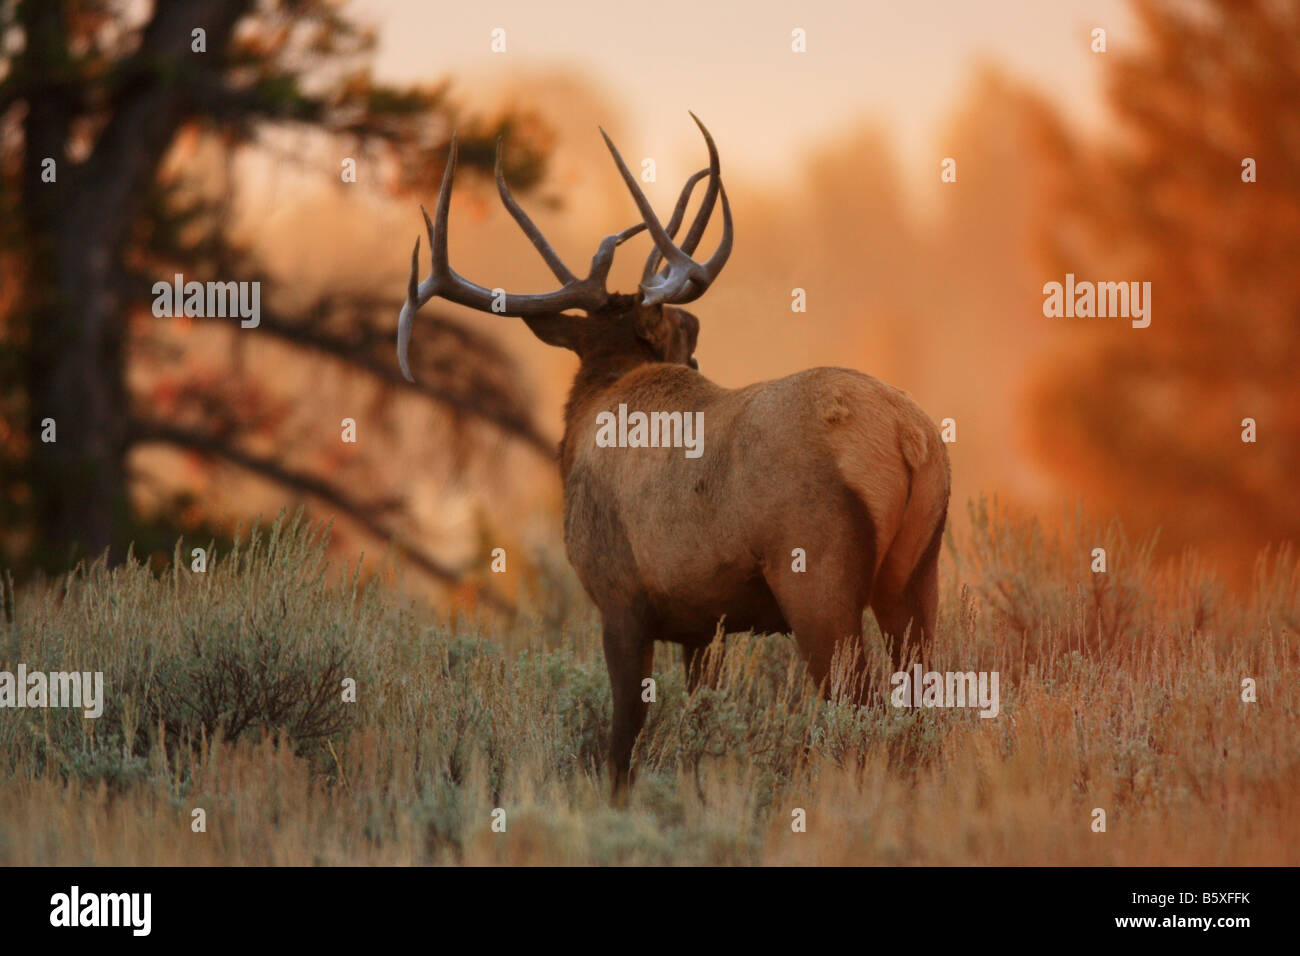 Bull Elk in golden morning light Stock Photo